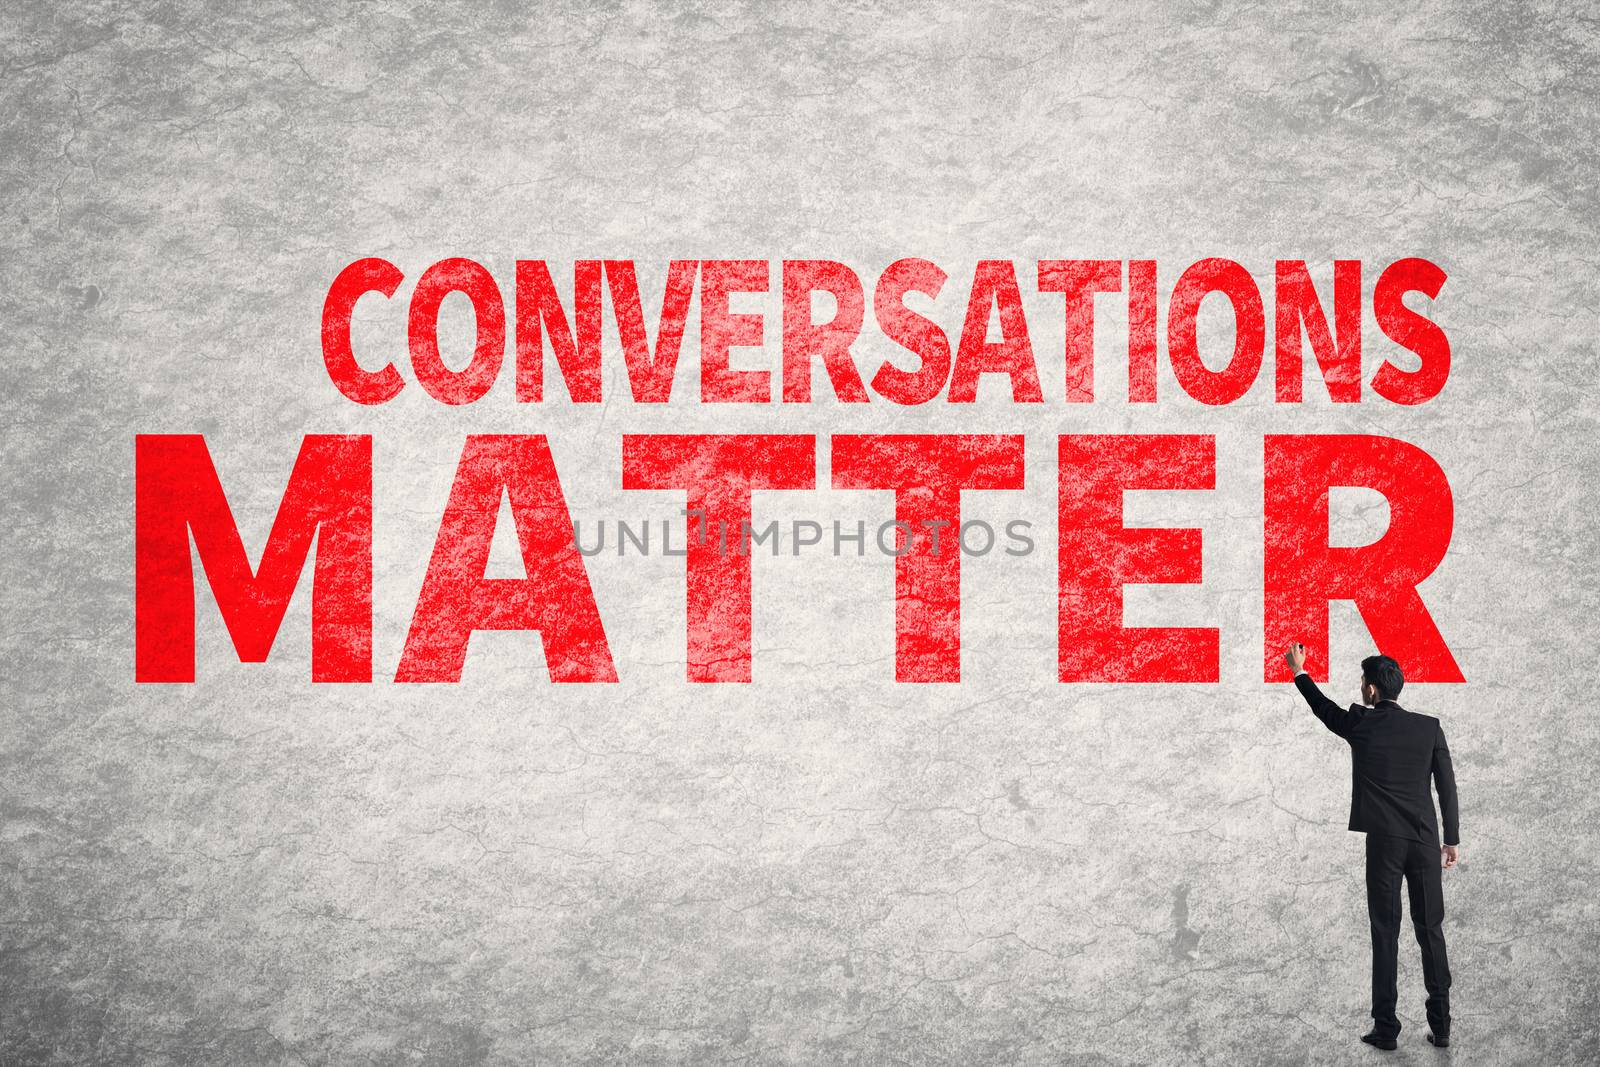 Conversations Matter by elwynn